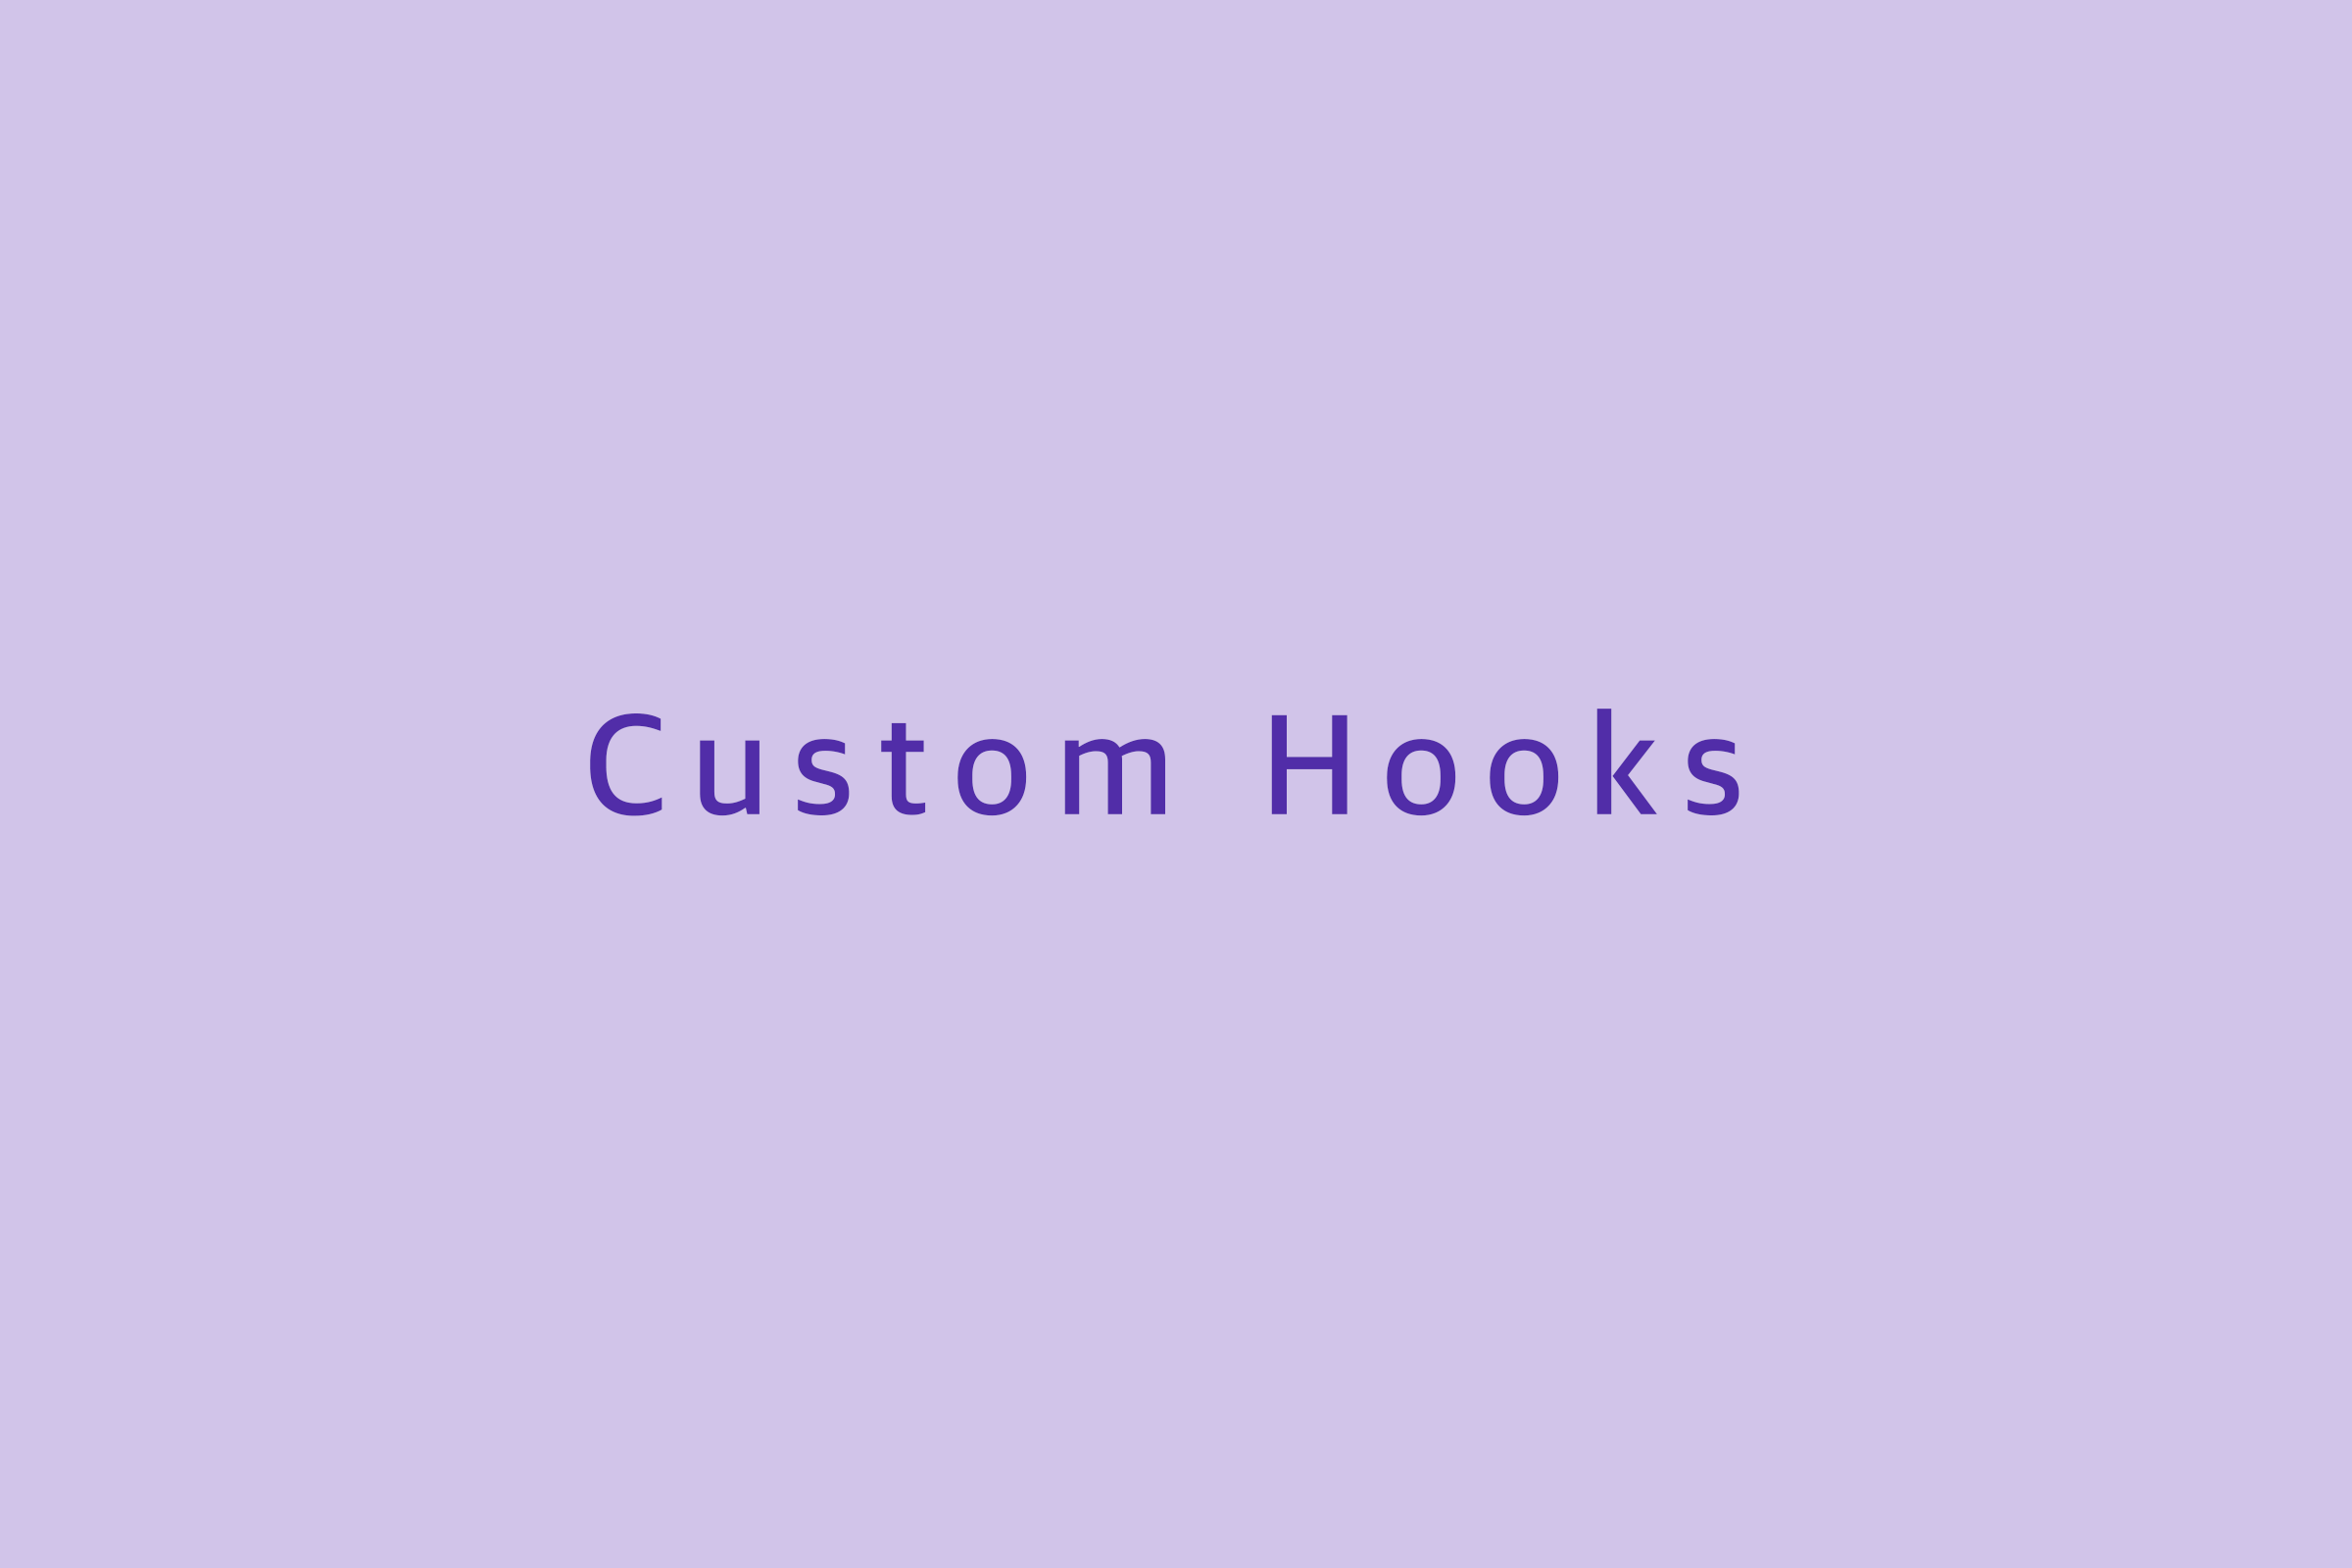 استفاده از Custom Hook در ReactJS